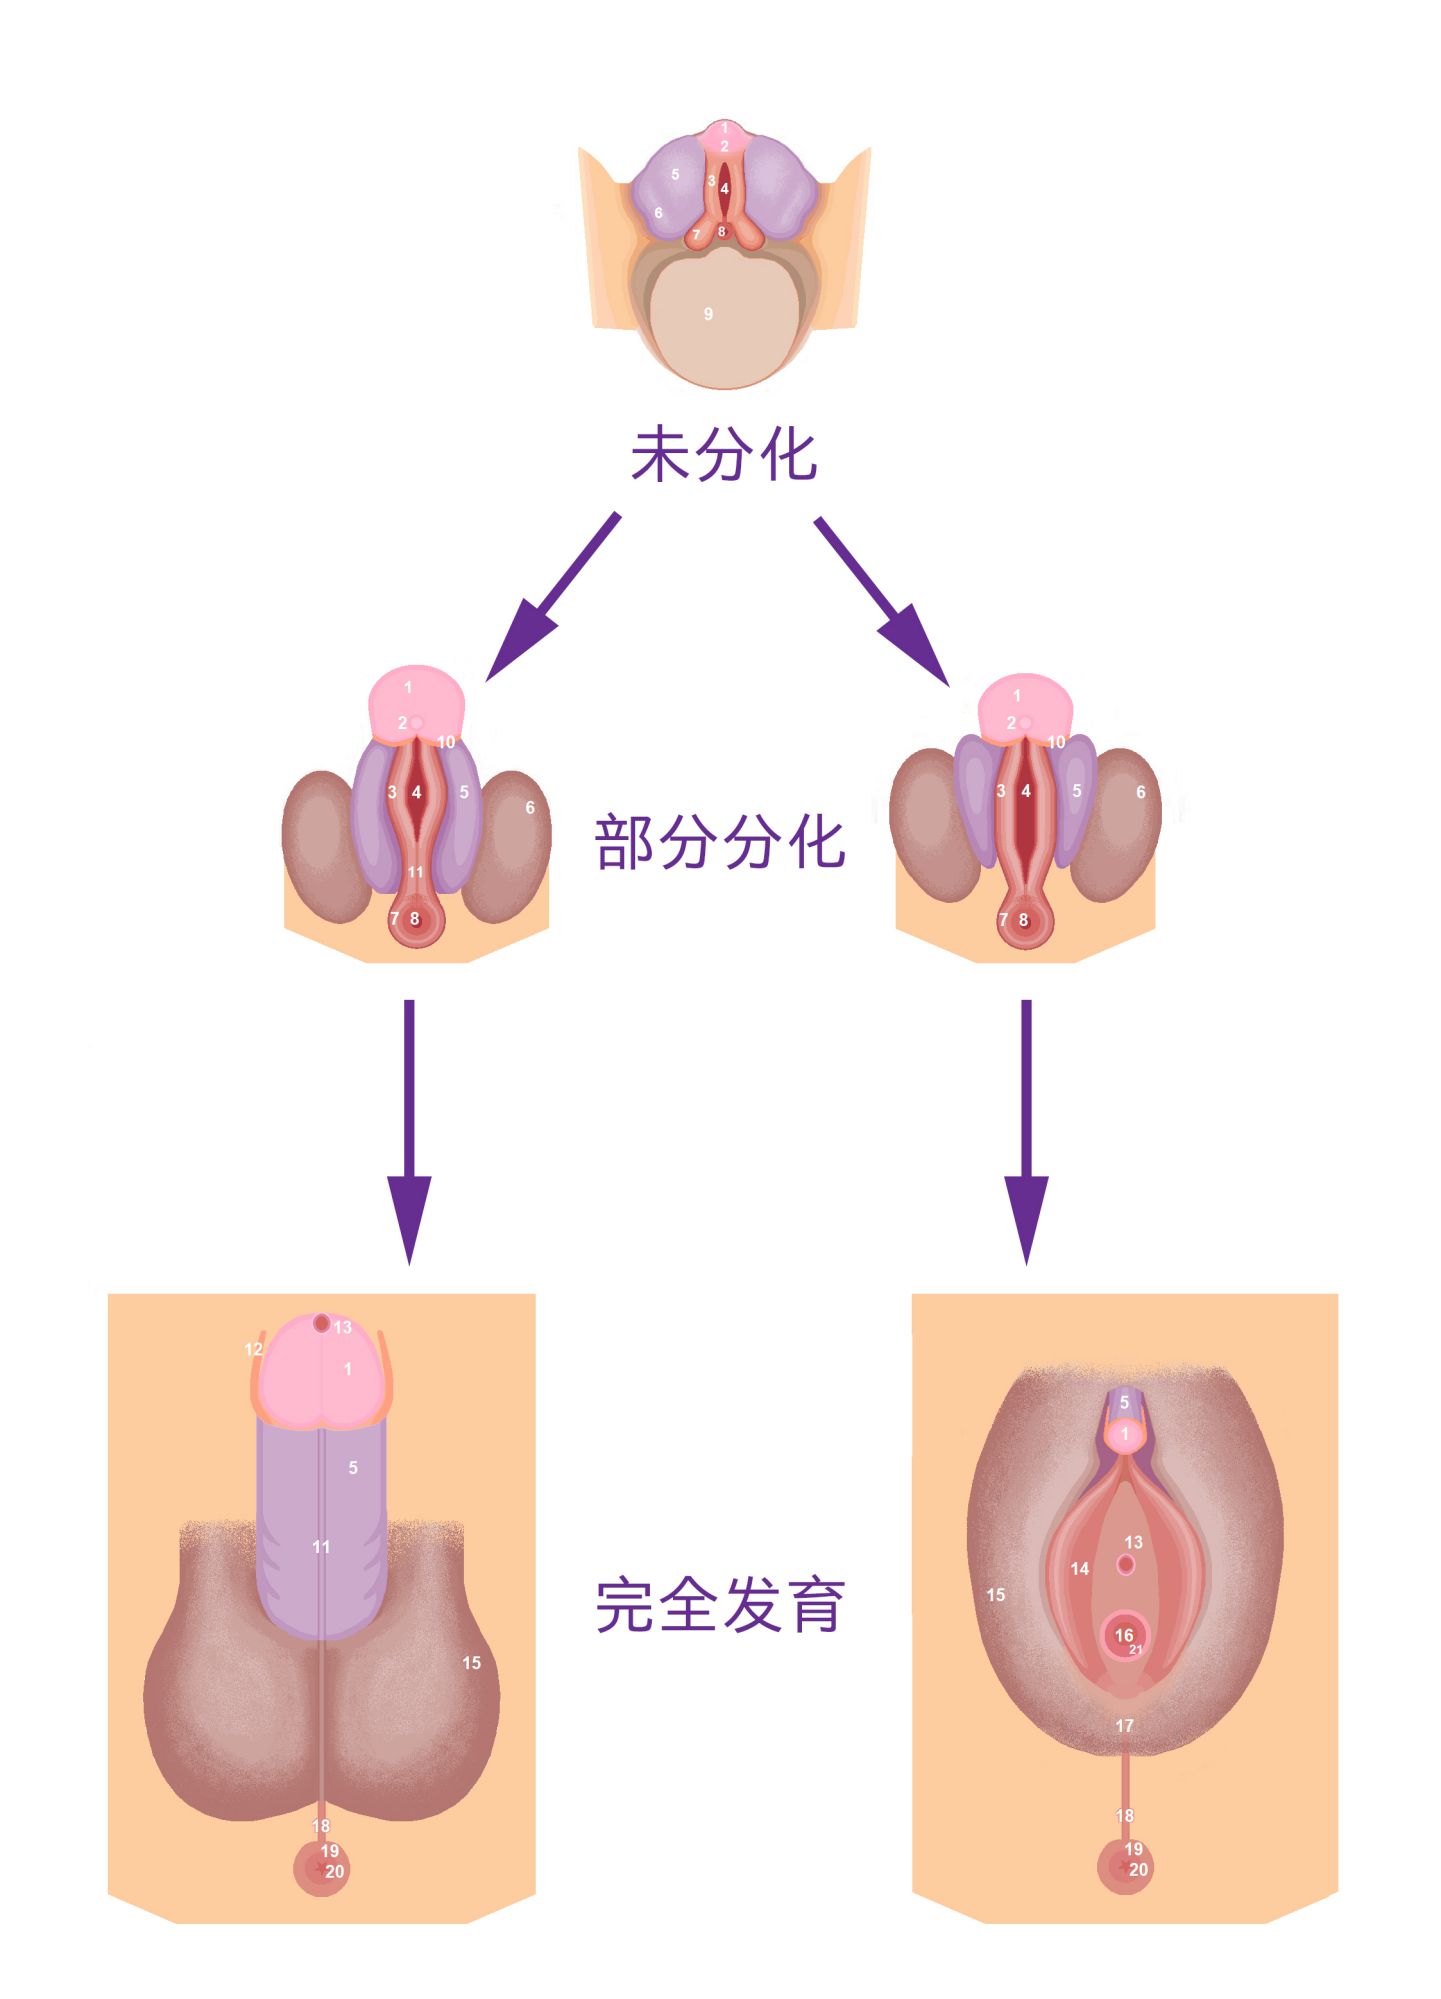 圖 15， 人類的外生殖器在胚胎時期，一開始看起來沒有區別。經過分化後才可以區分。